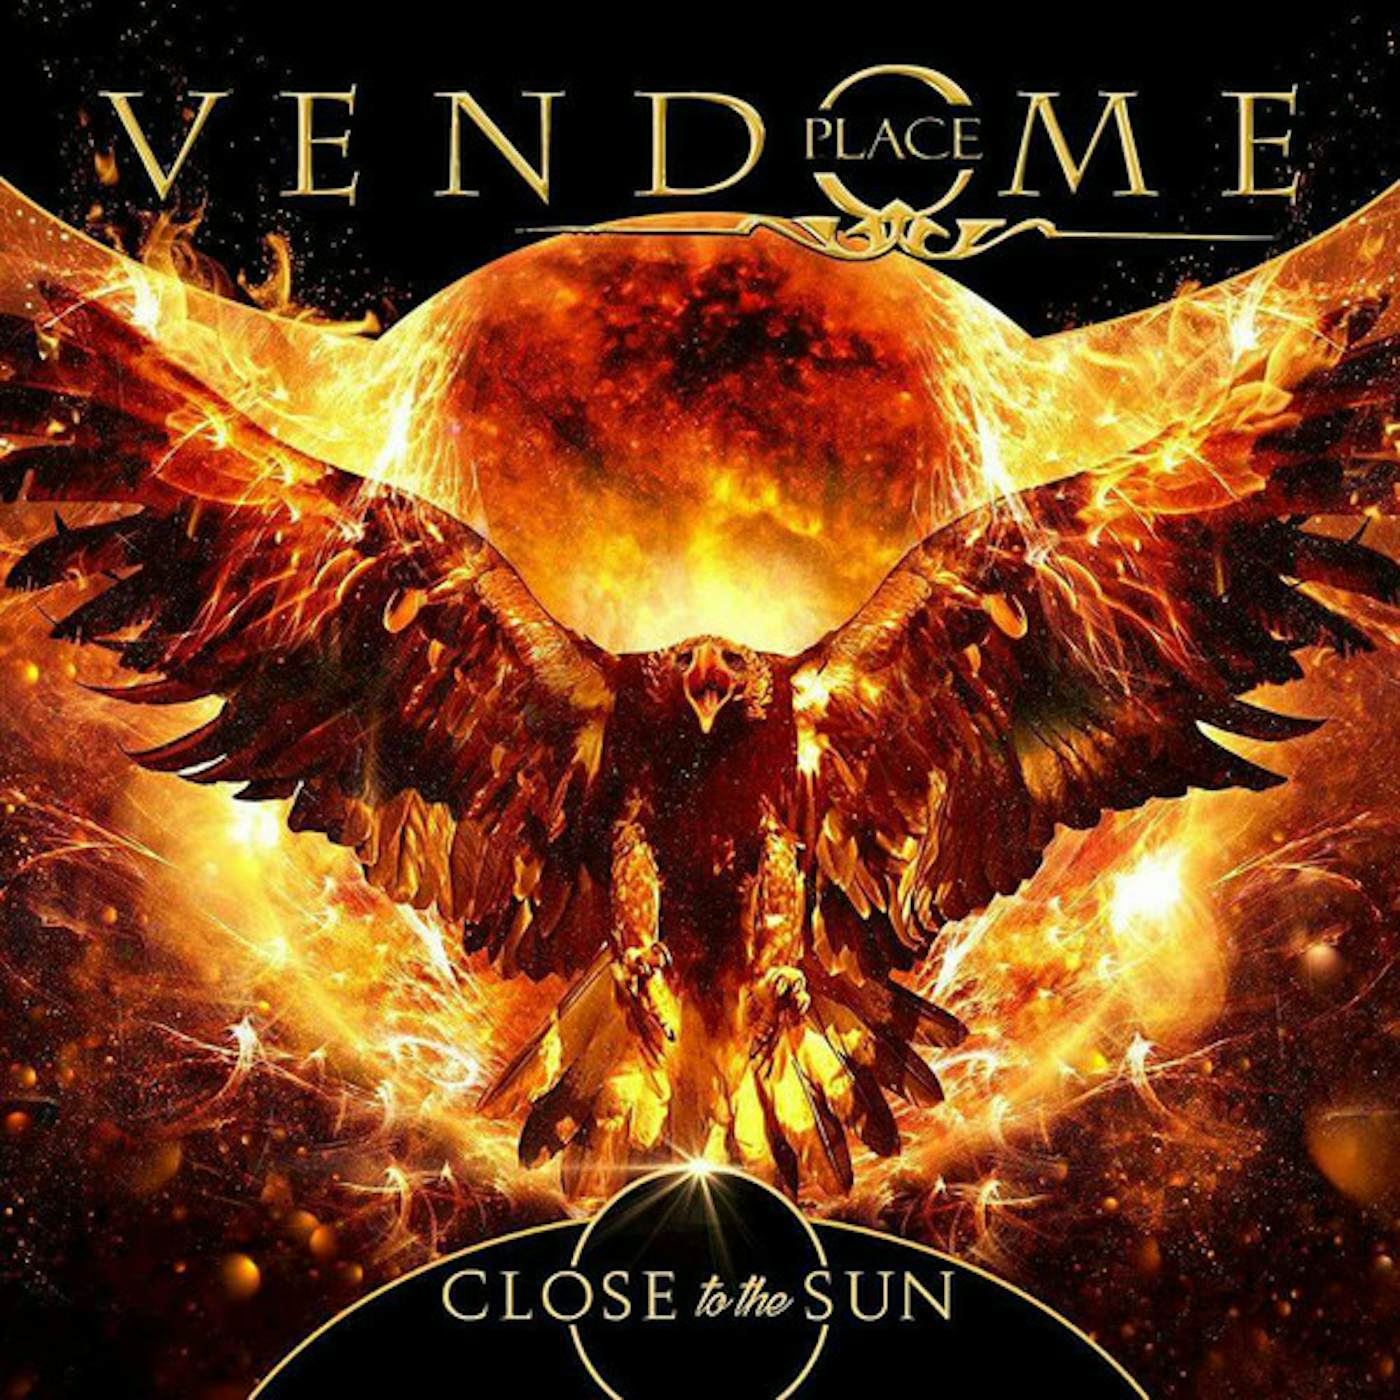 Place Vendome Close To The Sun Vinyl Record